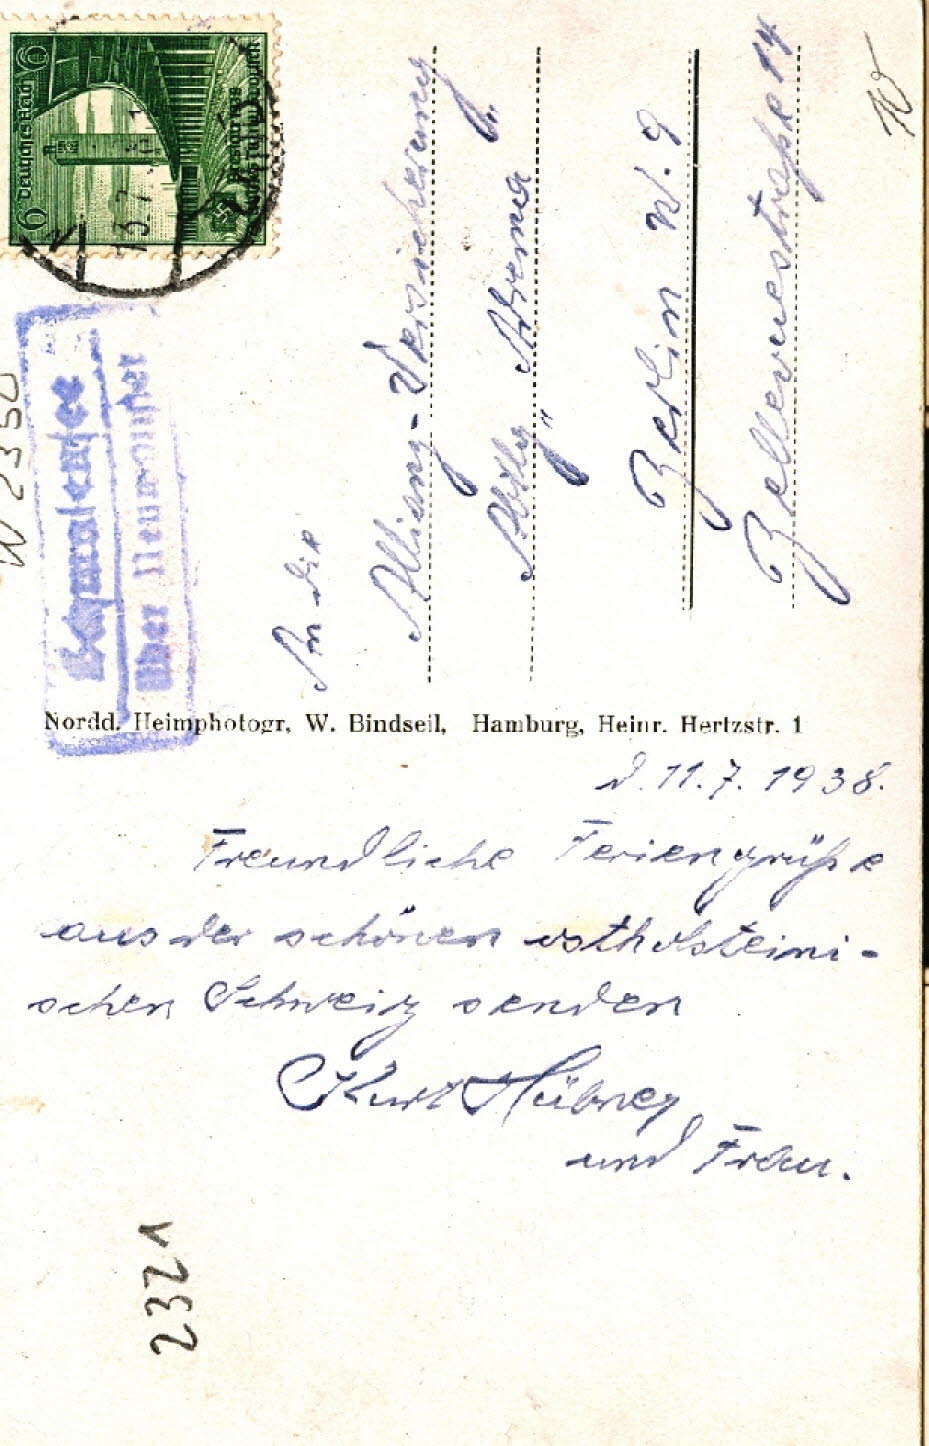 1938 Partie am Schmalensee Rckseite An die Allianz-Versicherung Berlin W 9, Bellevuestrae 14 